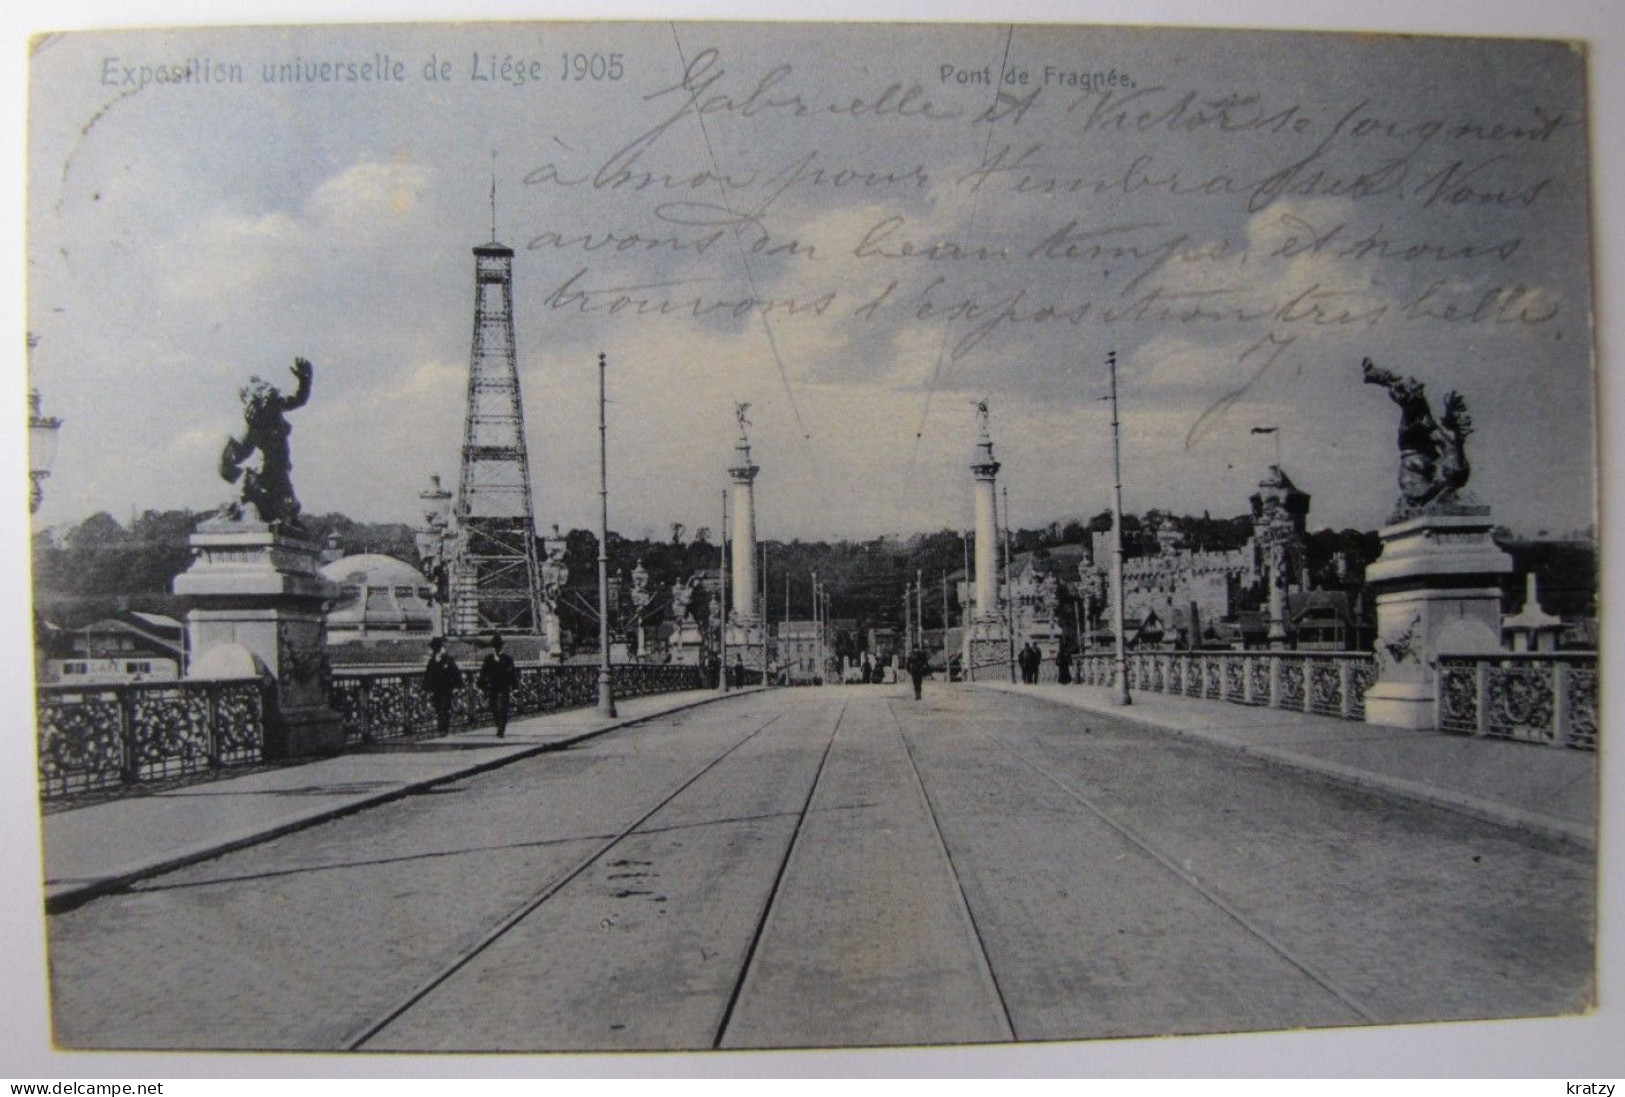 BELGIQUE - LIEGE - VILLE - Exposition Universelle De 1905 - Le Pont De Fragnée - Lüttich